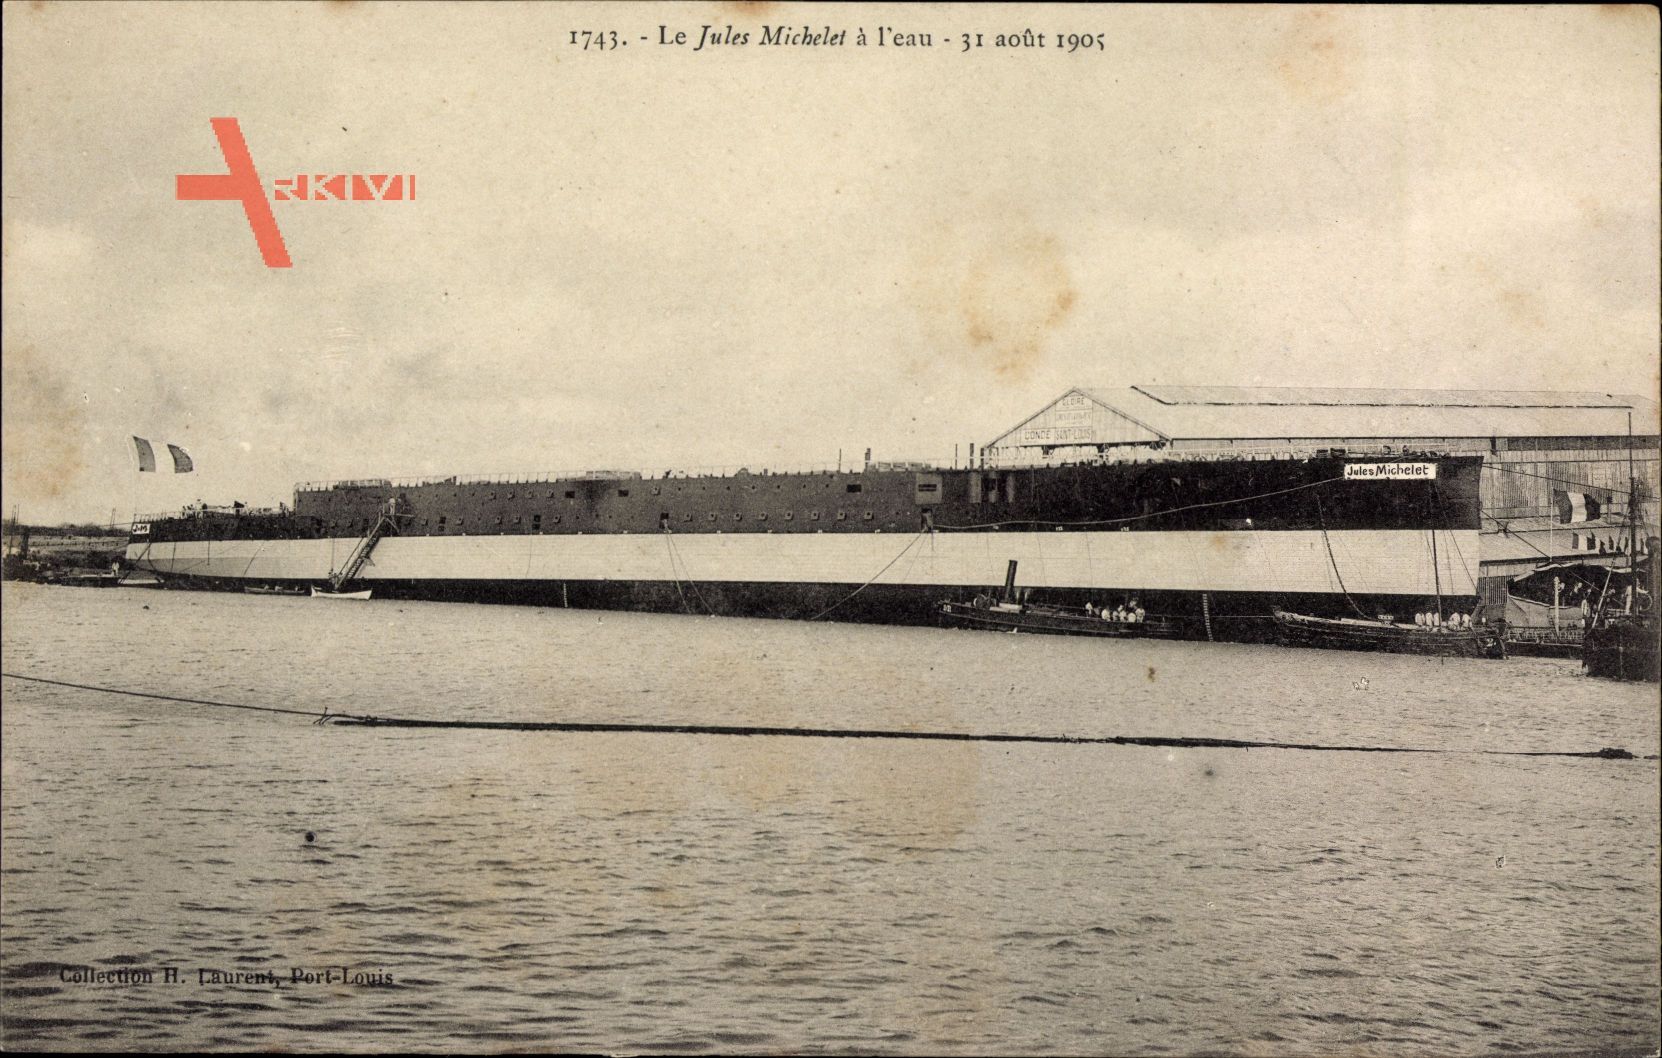 Le Jules Michelet à leau, 31 août 1905, Kriegsschiff, Werft